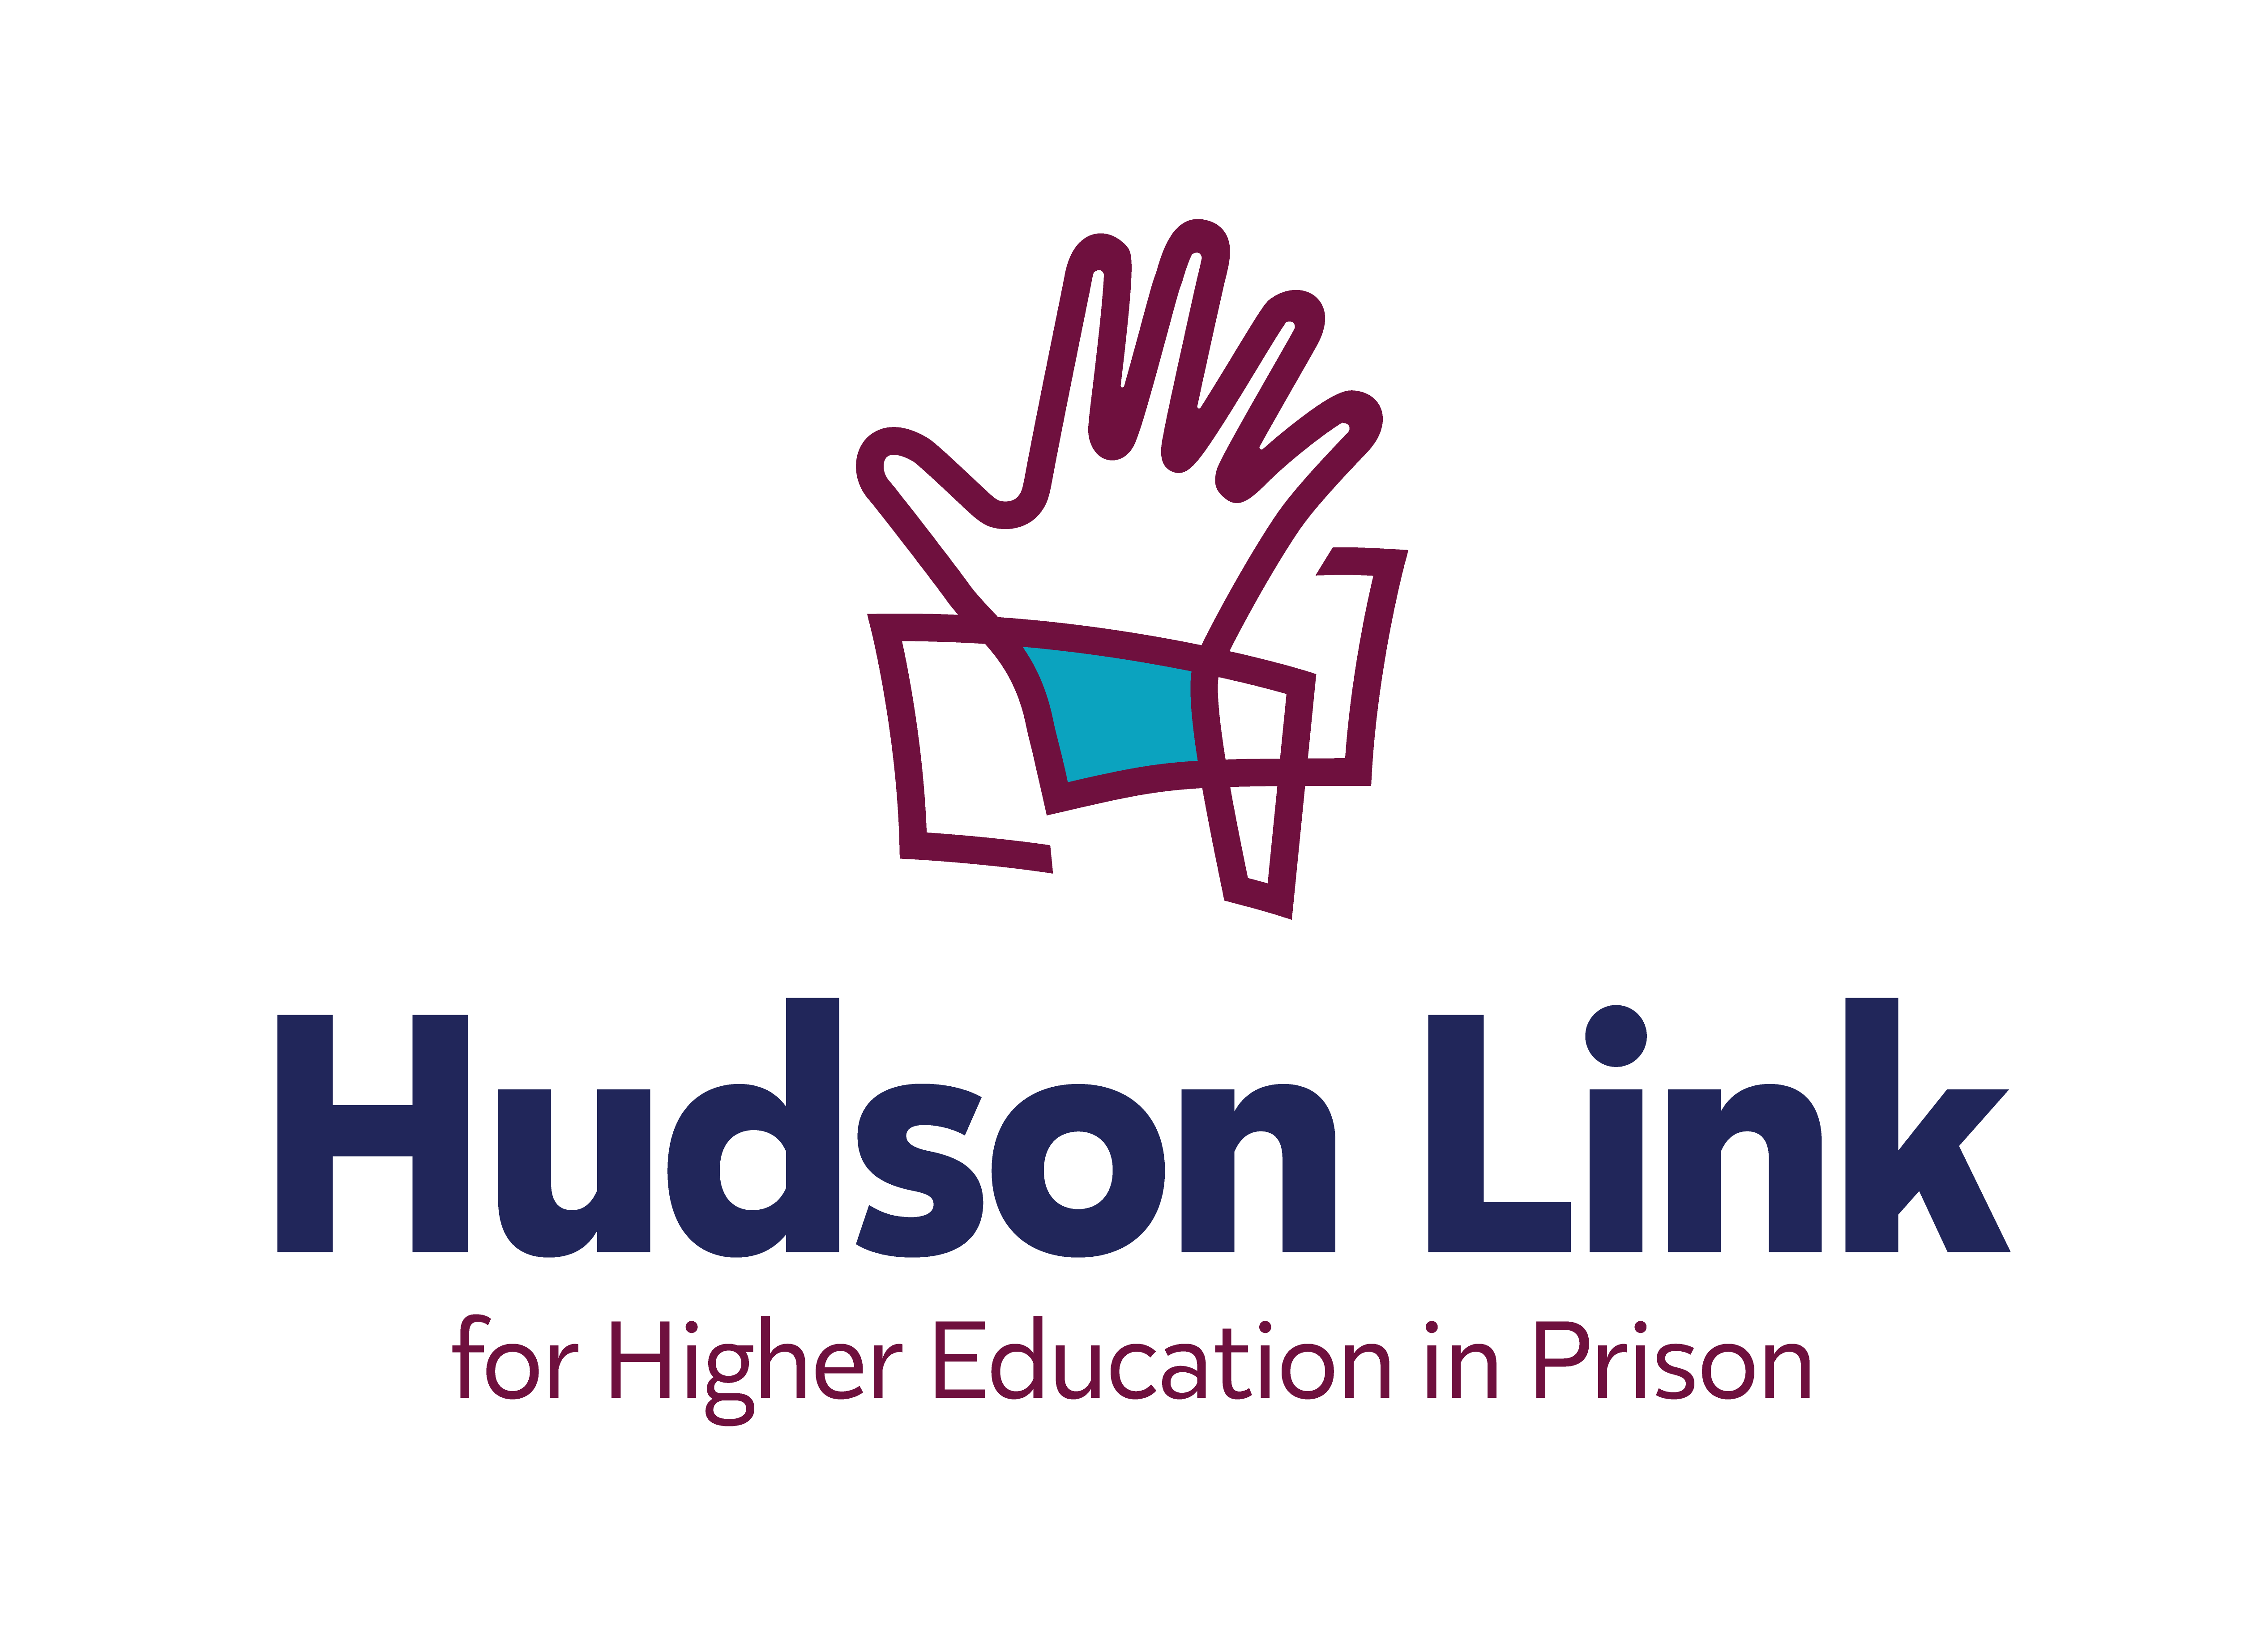 Hudson Link for Higher Education in Prison